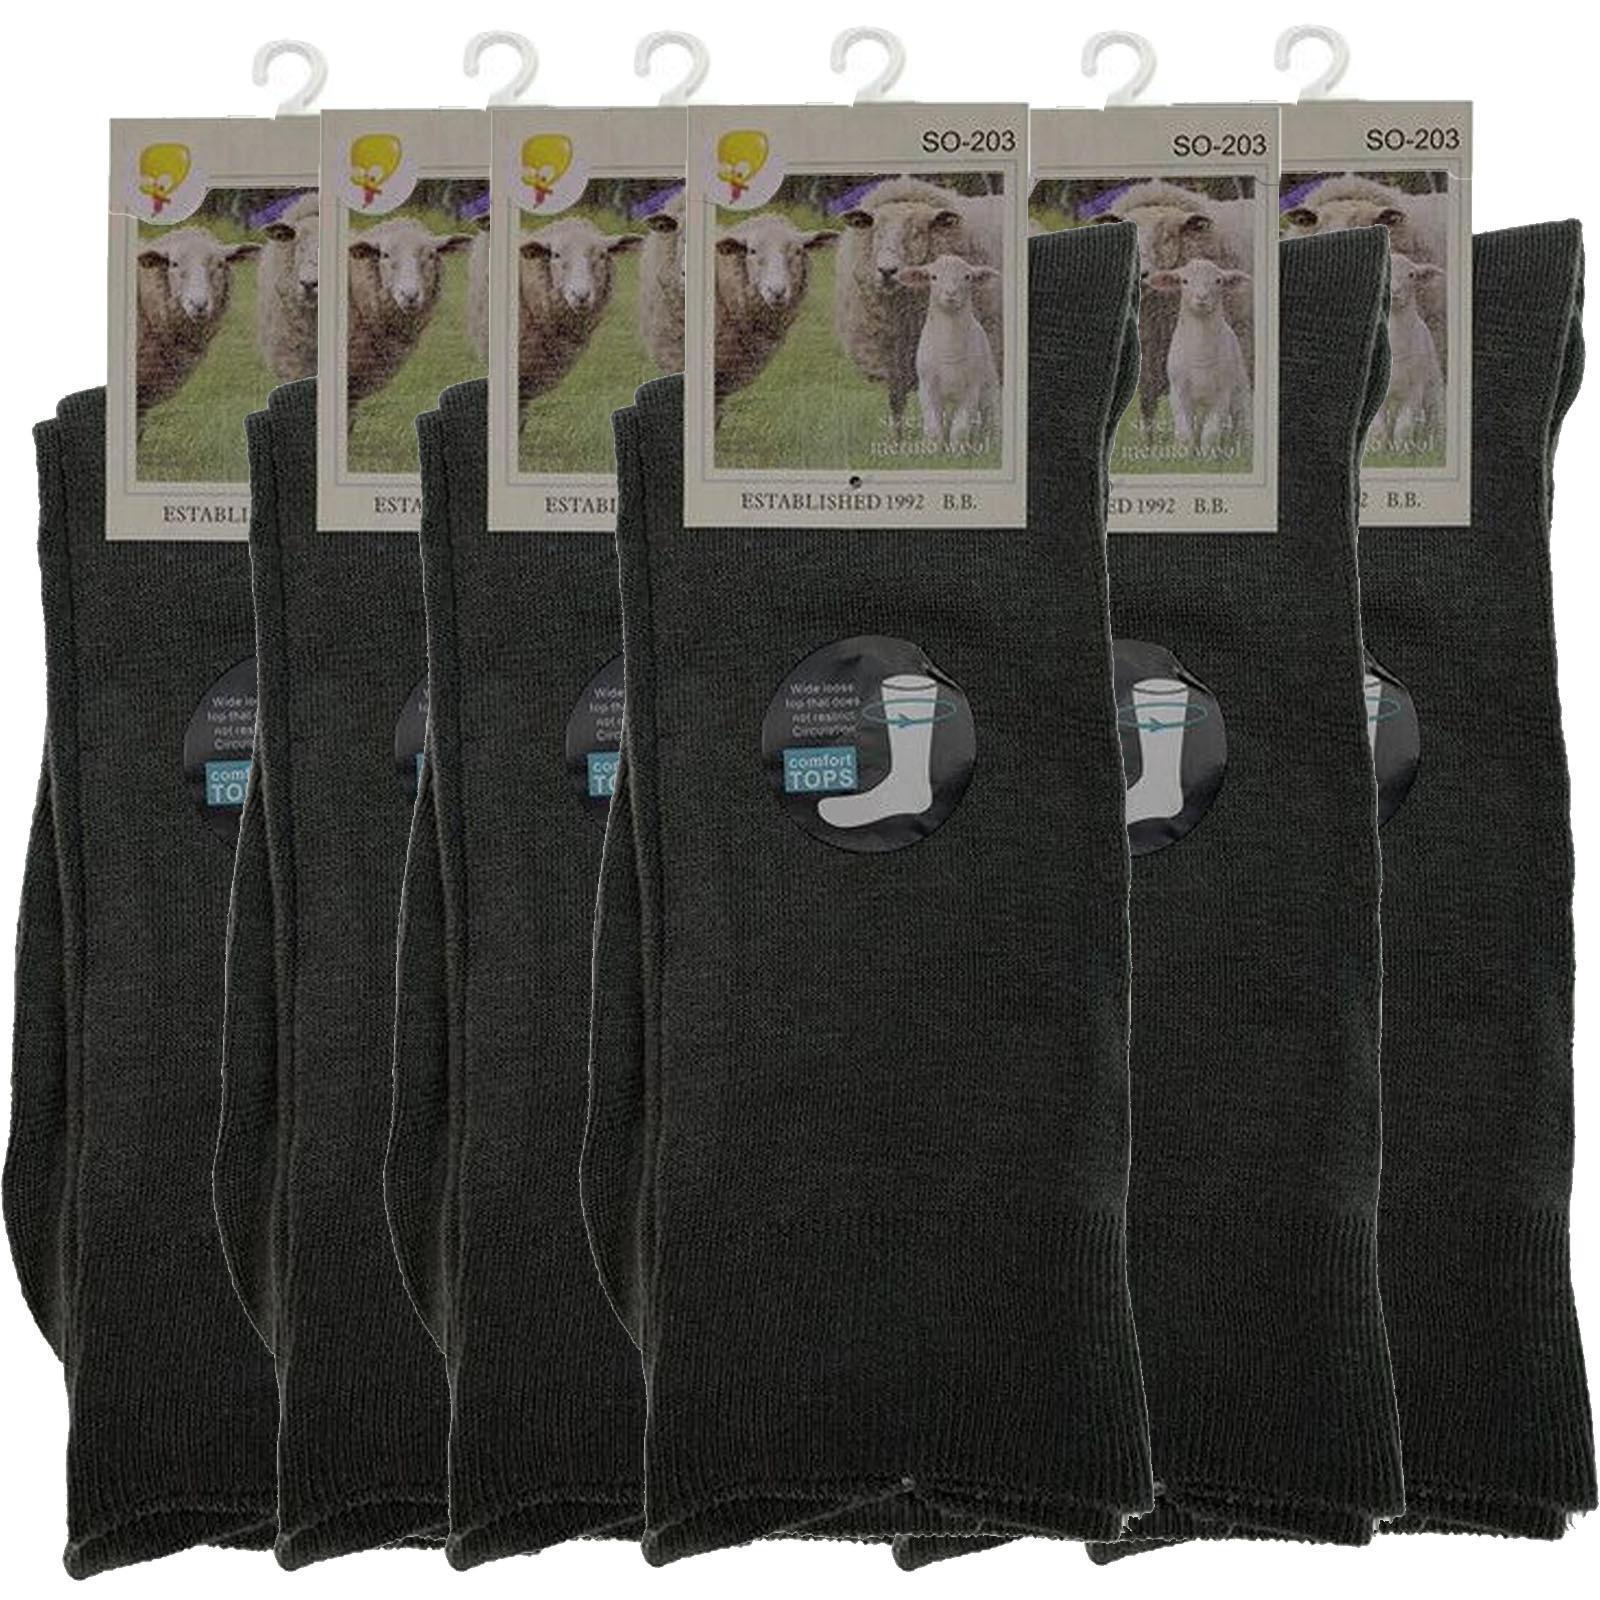 Merino Wool Mens Loose Top Thermal Socks Diabetic Comfort Circulation - 6 Pairs - Grey - 2-8